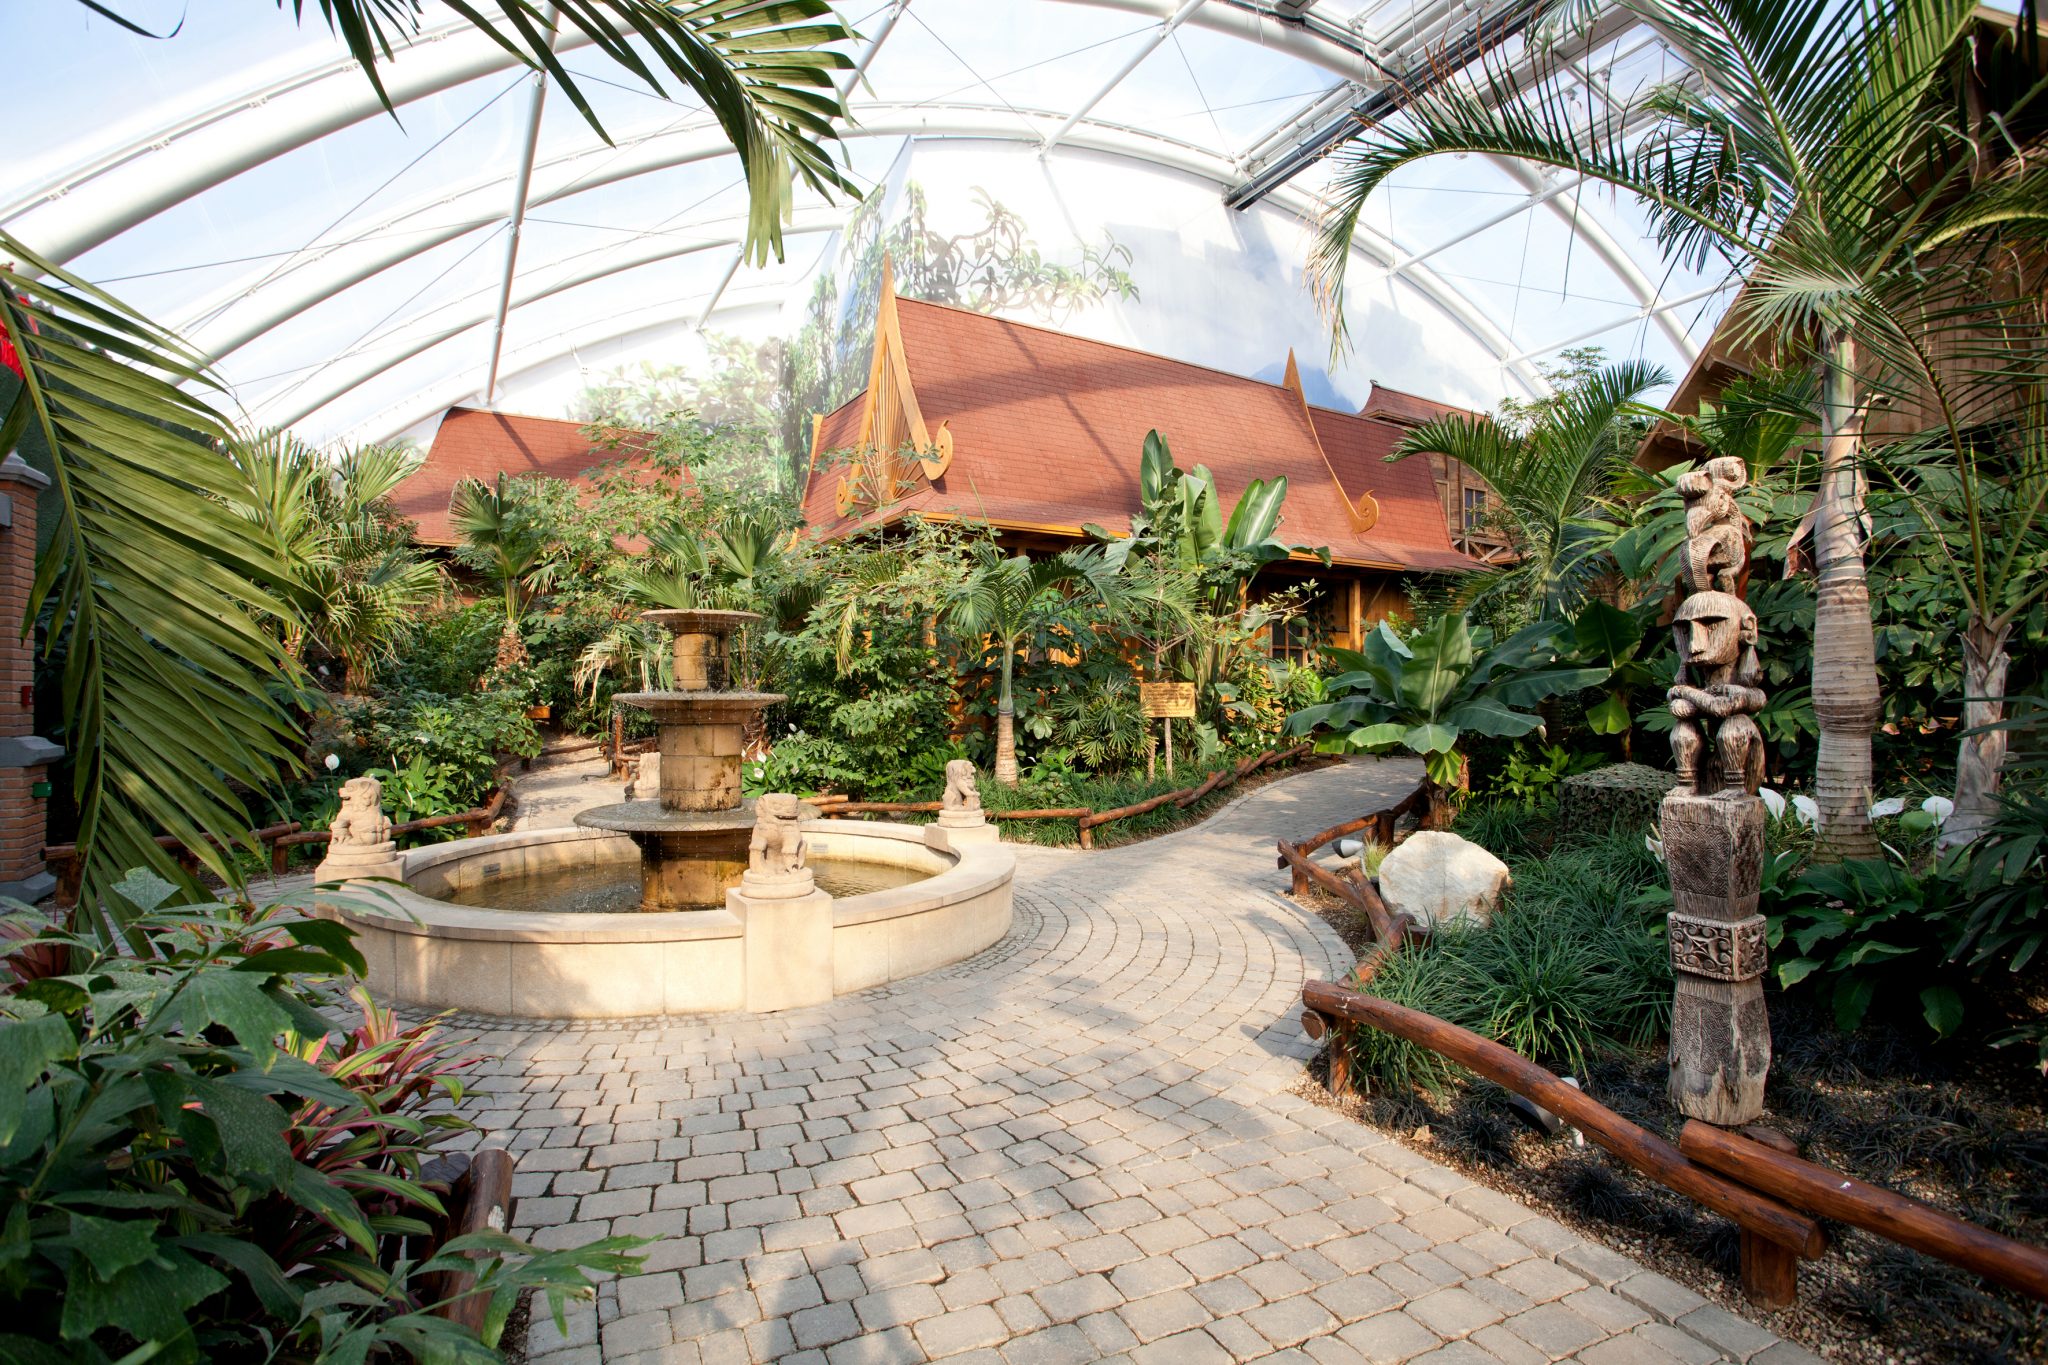 GBMpic_ Ein tropisches Gewächshaus mit einem zentralen Brunnen, üppiger Vegetation und einem gewundenen Pfad, der zu einem Pavillon im thailändischen Stil führt.